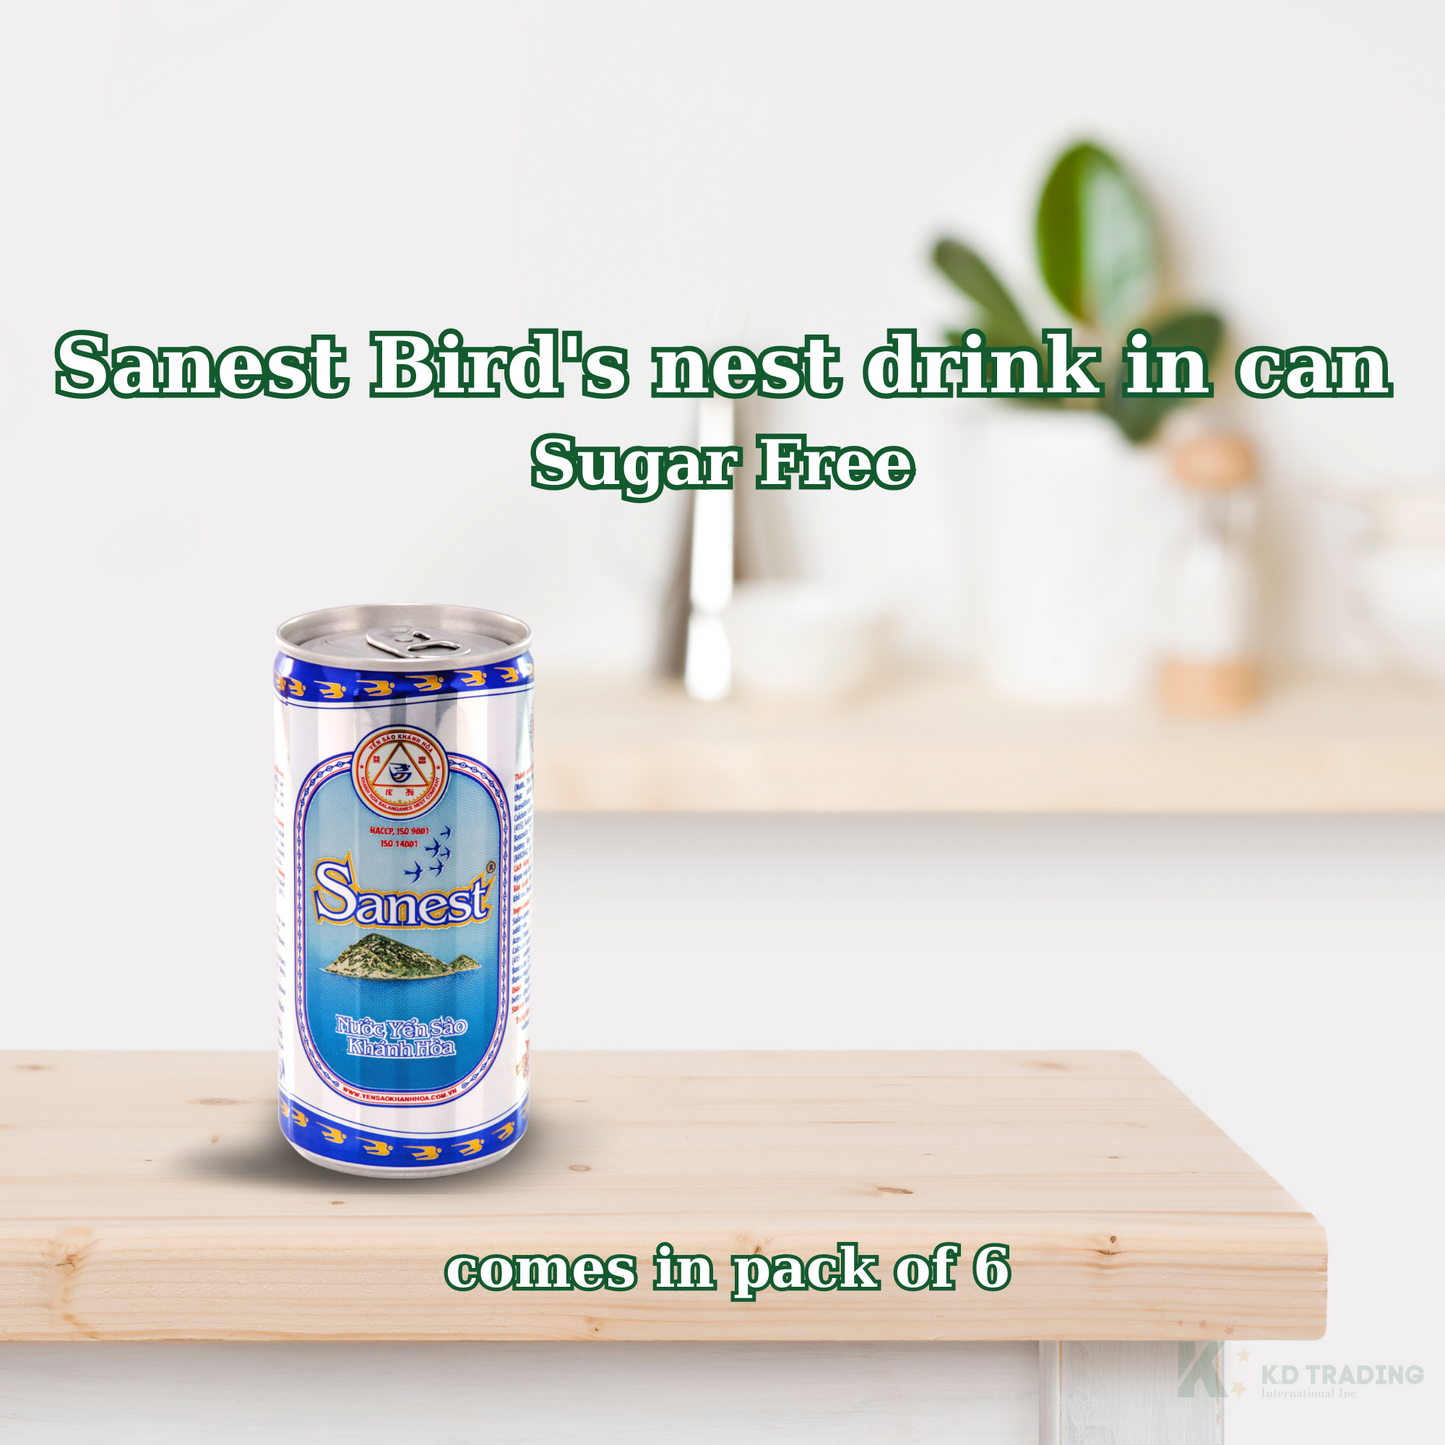 Sugar Free Sanest Bird's Nest Drink Can